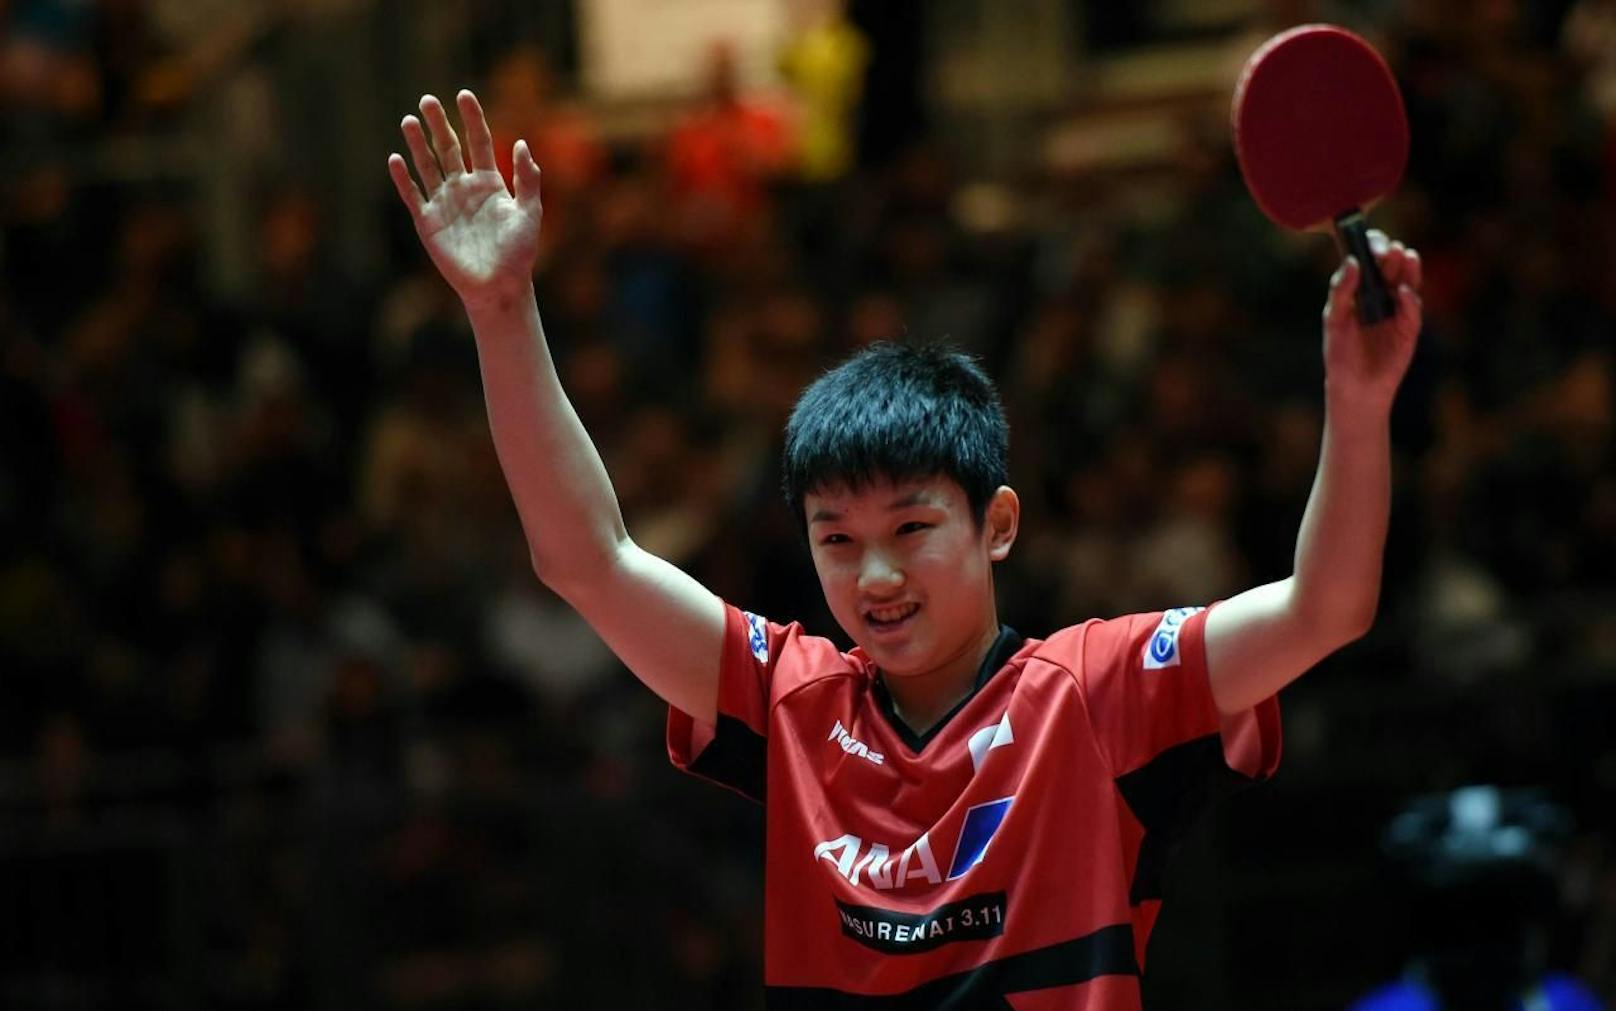 13-jähriger mischt die Tischtennis-Welt auf